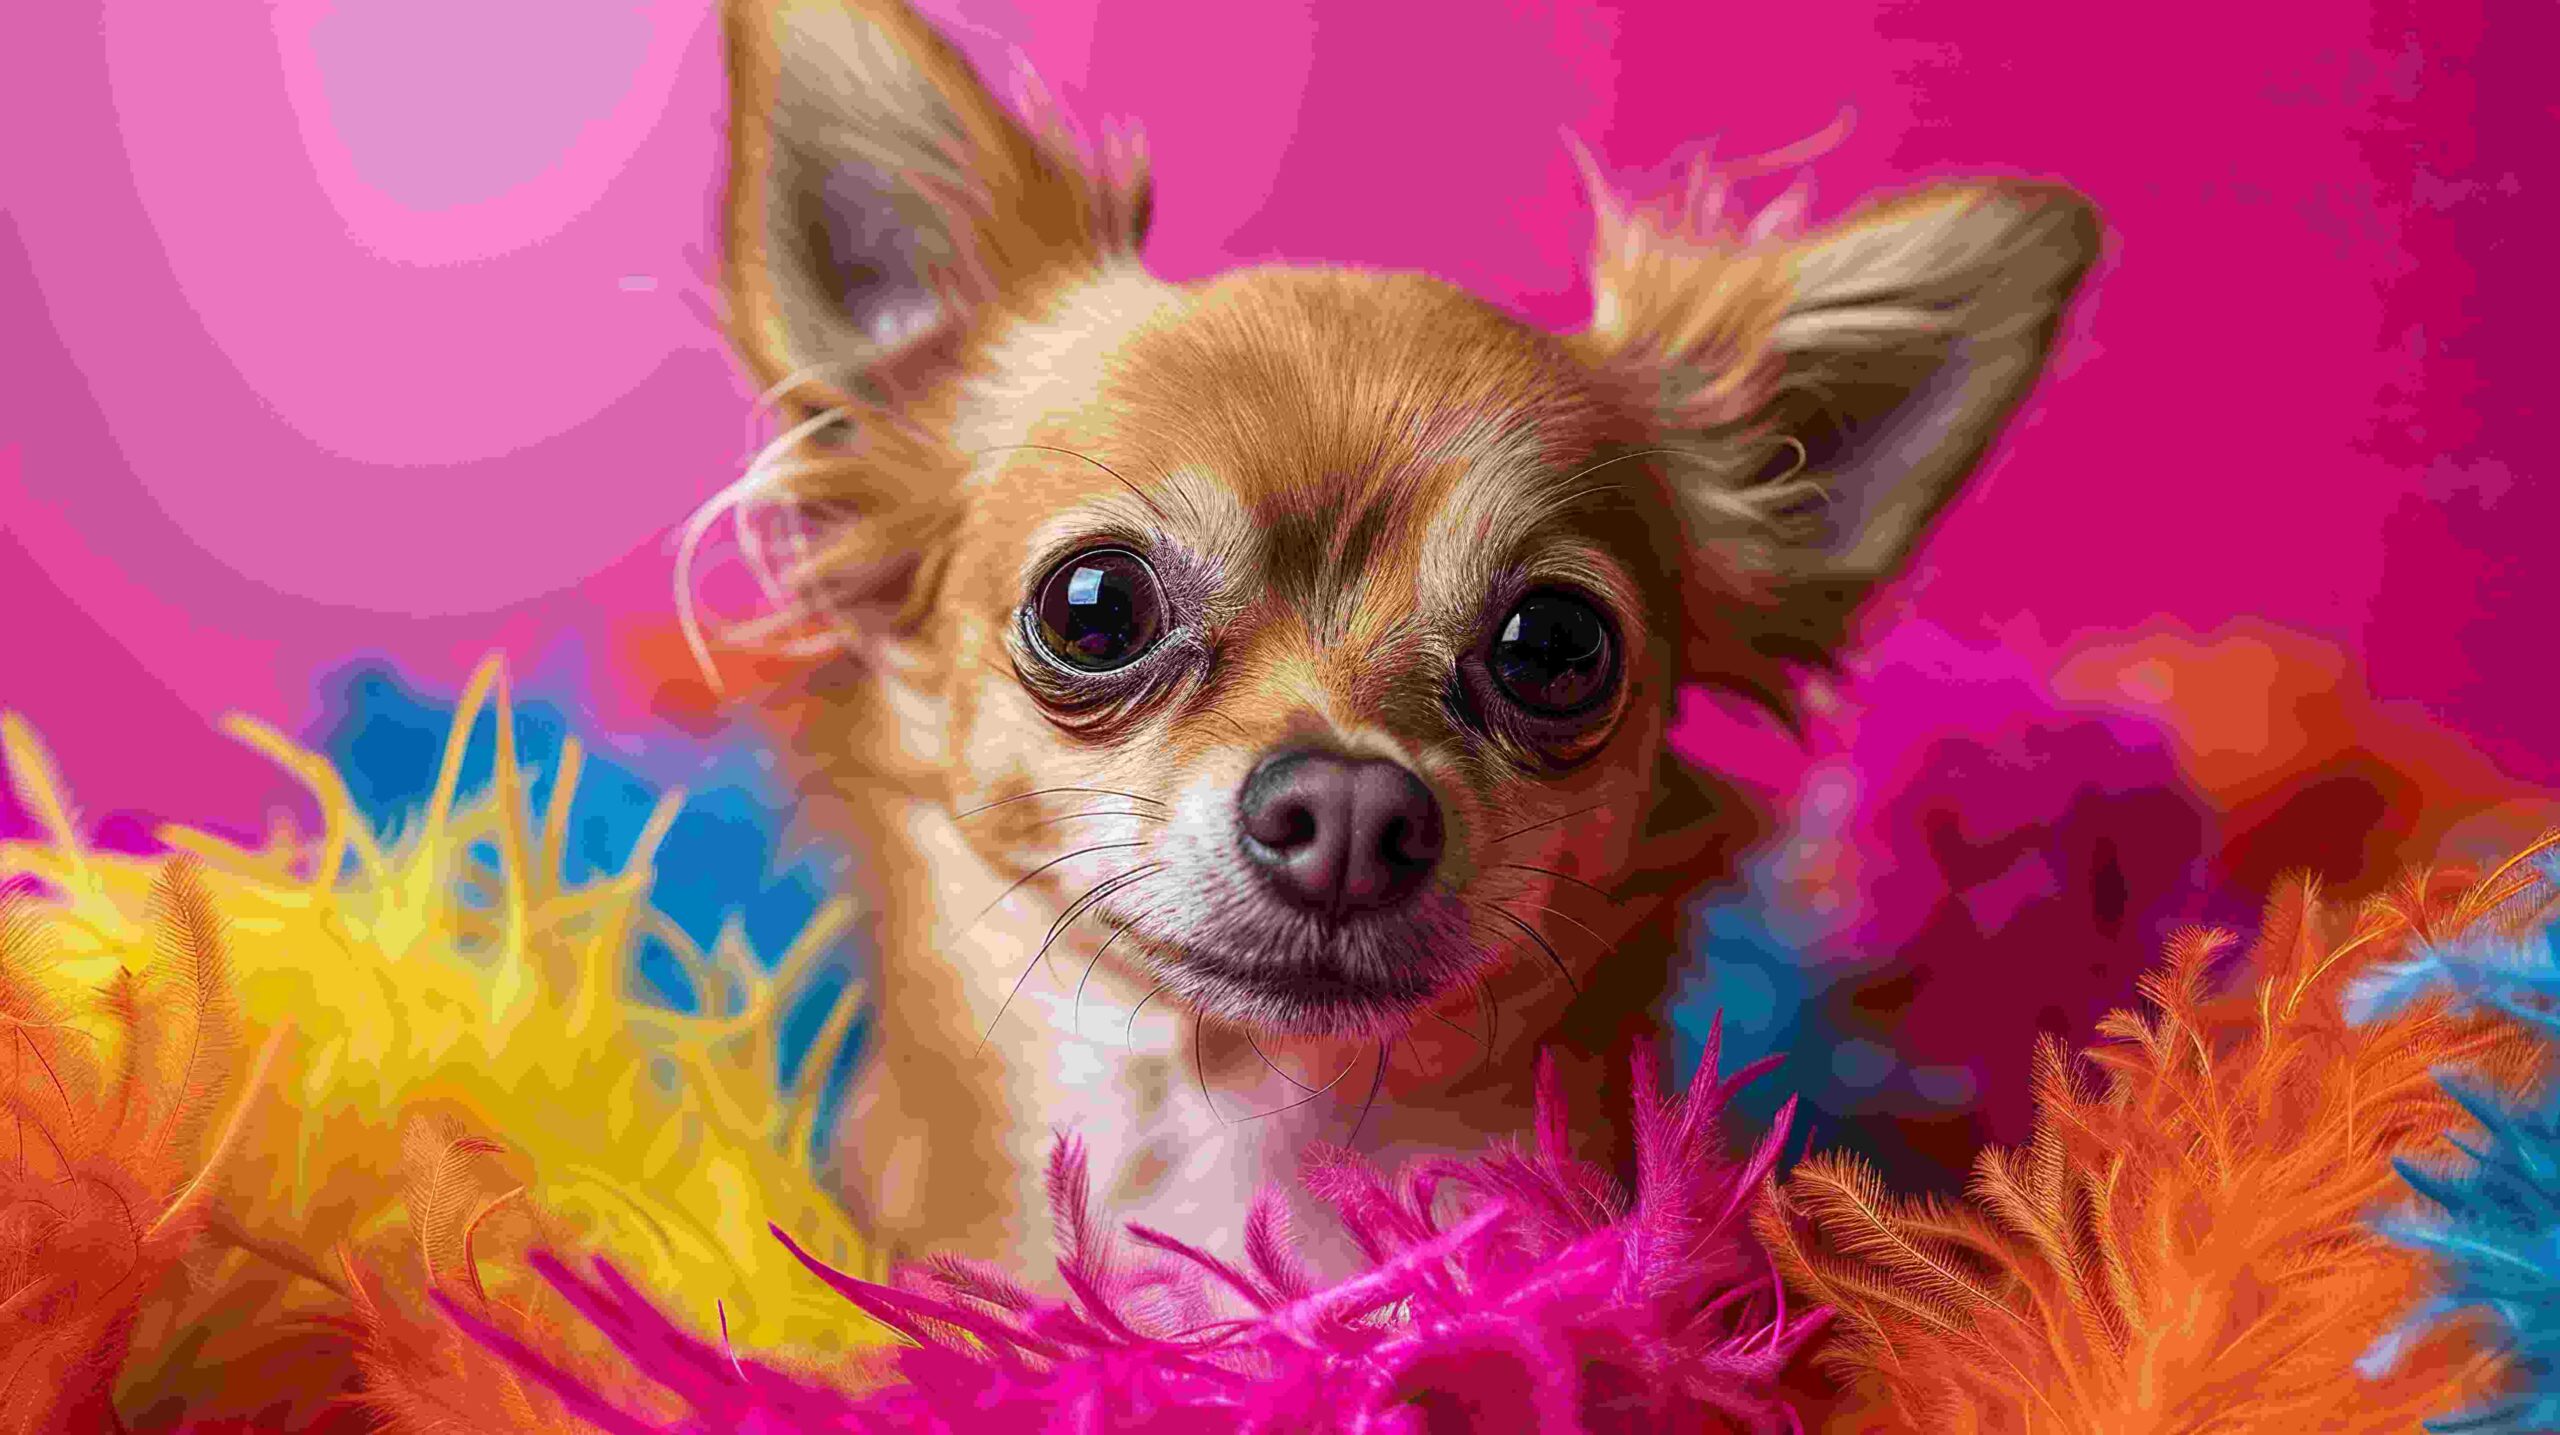 Chihuahuas photoshoot